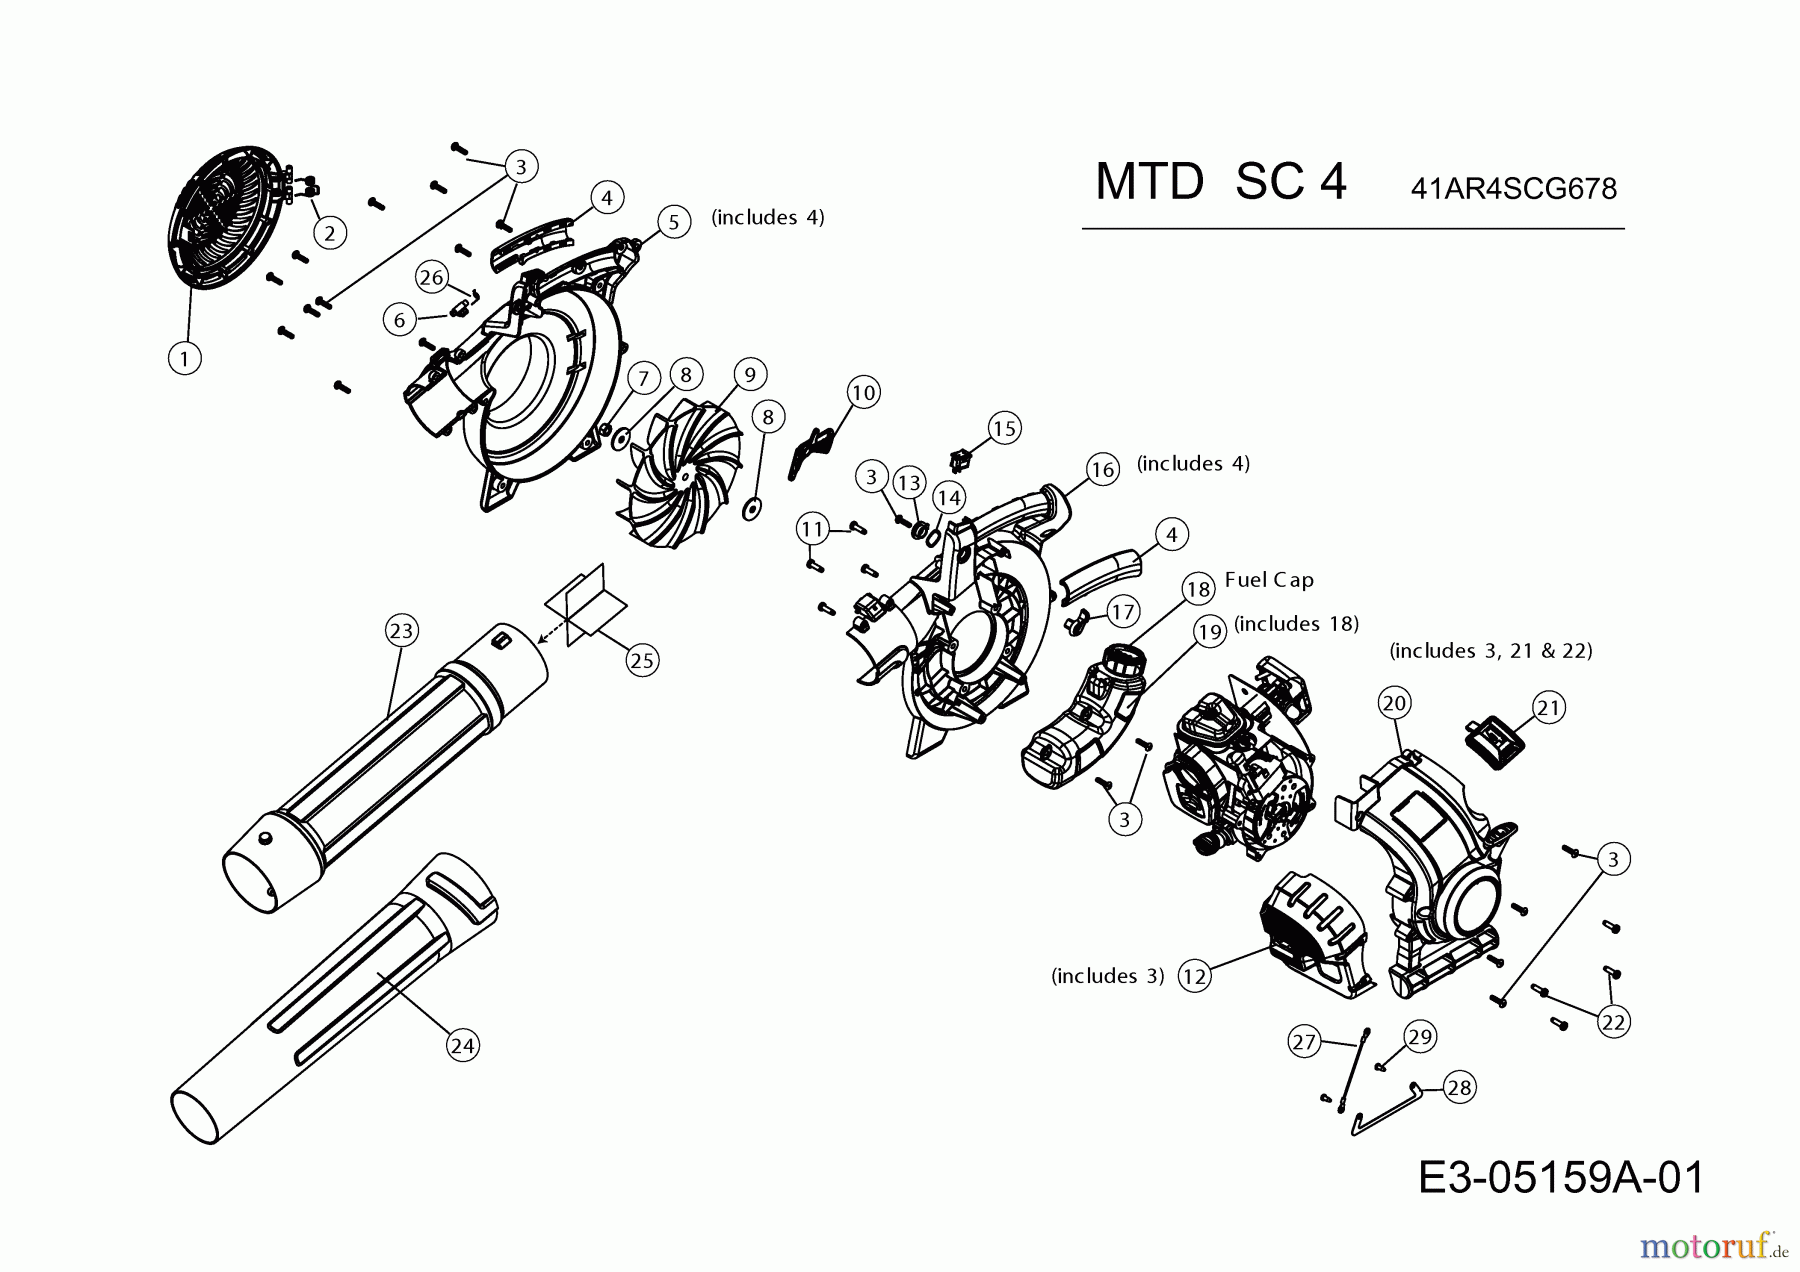  MTD Leaf blower, Blower vac SC 4 41AR4SCG678  (2017) Basic machine